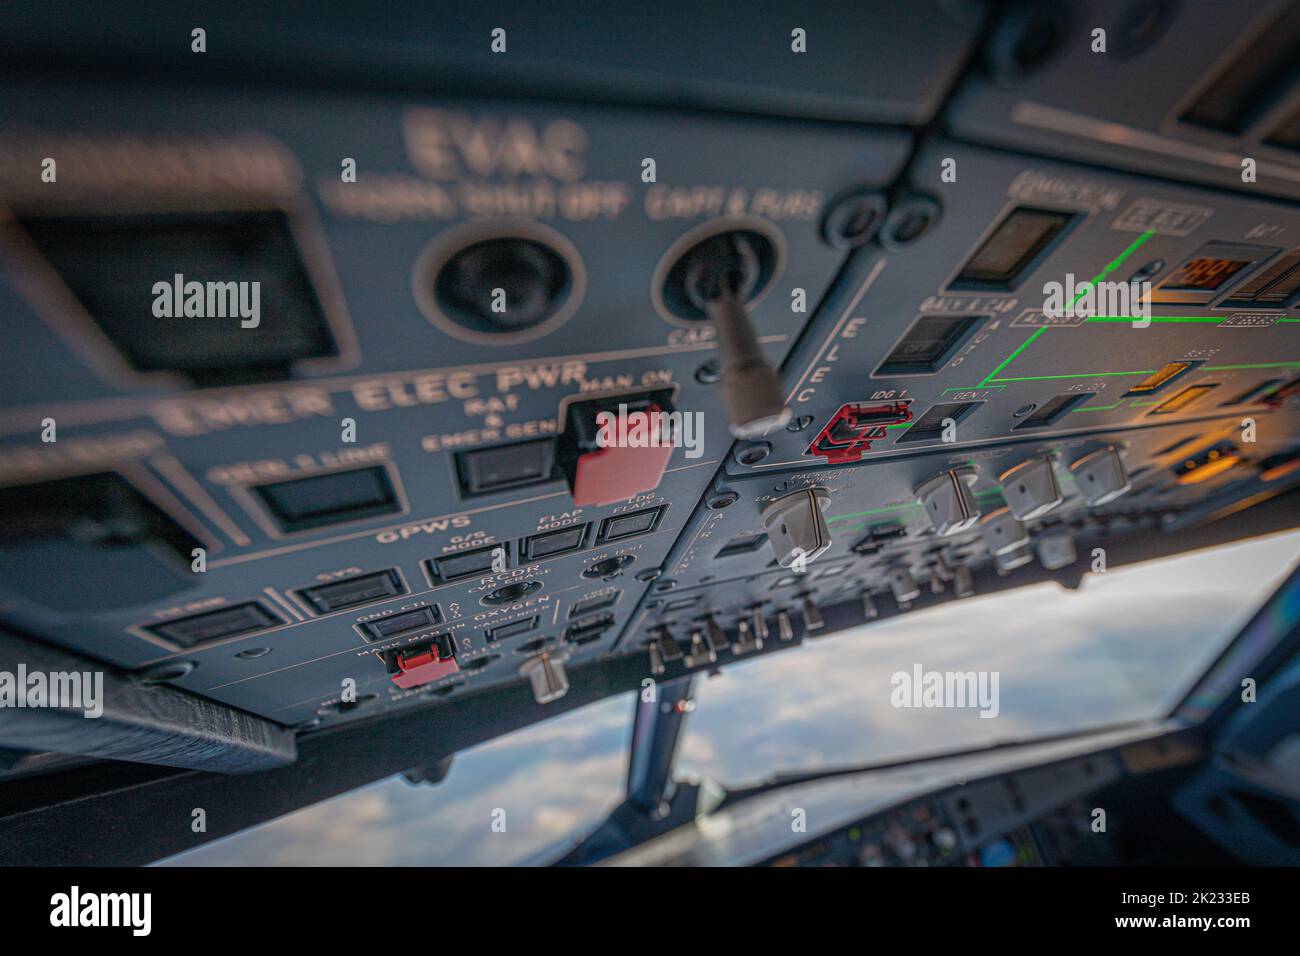 Airbus Flight Deck a été filmé avec le tableau de bord et une vue vers le bas sur les nuages. Mise au point claire sur le commutateur manuel du masque. Banque D'Images